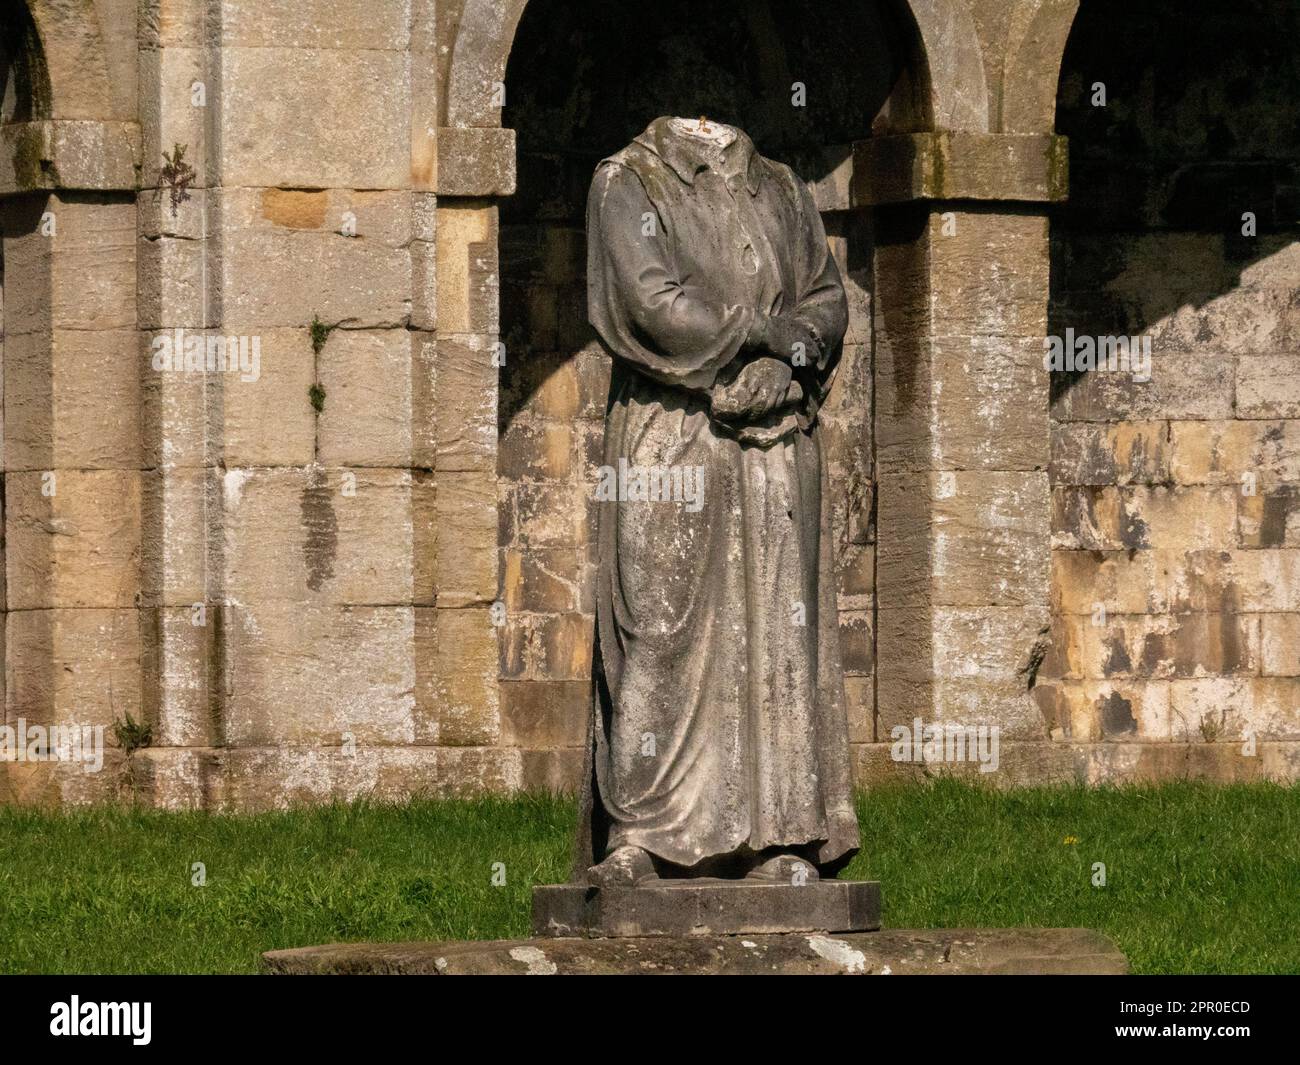 Dante, statua in marmo senza testa nel Crystal Palace Park. Registrato per la prima volta nel parco nel 1864. Immagine a tutta lunghezza incorniciata da un arco classico. Foto Stock